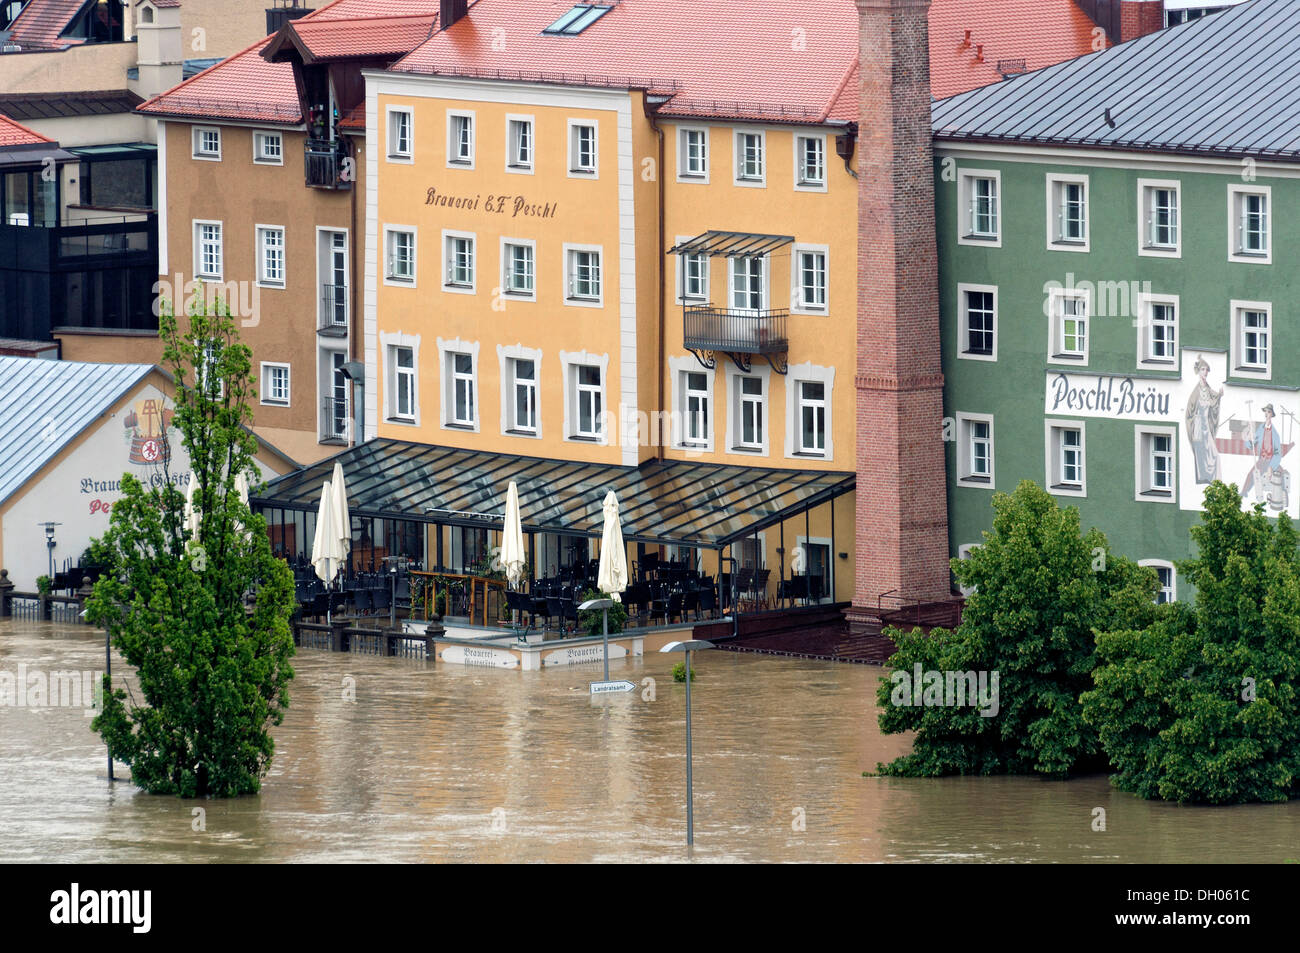 Inondati Peschl Braeu la birreria e il ristorante a fianco del fiume Danubio durante le inondazioni del 3 giugno 2013, Passau, Bassa Baviera Foto Stock